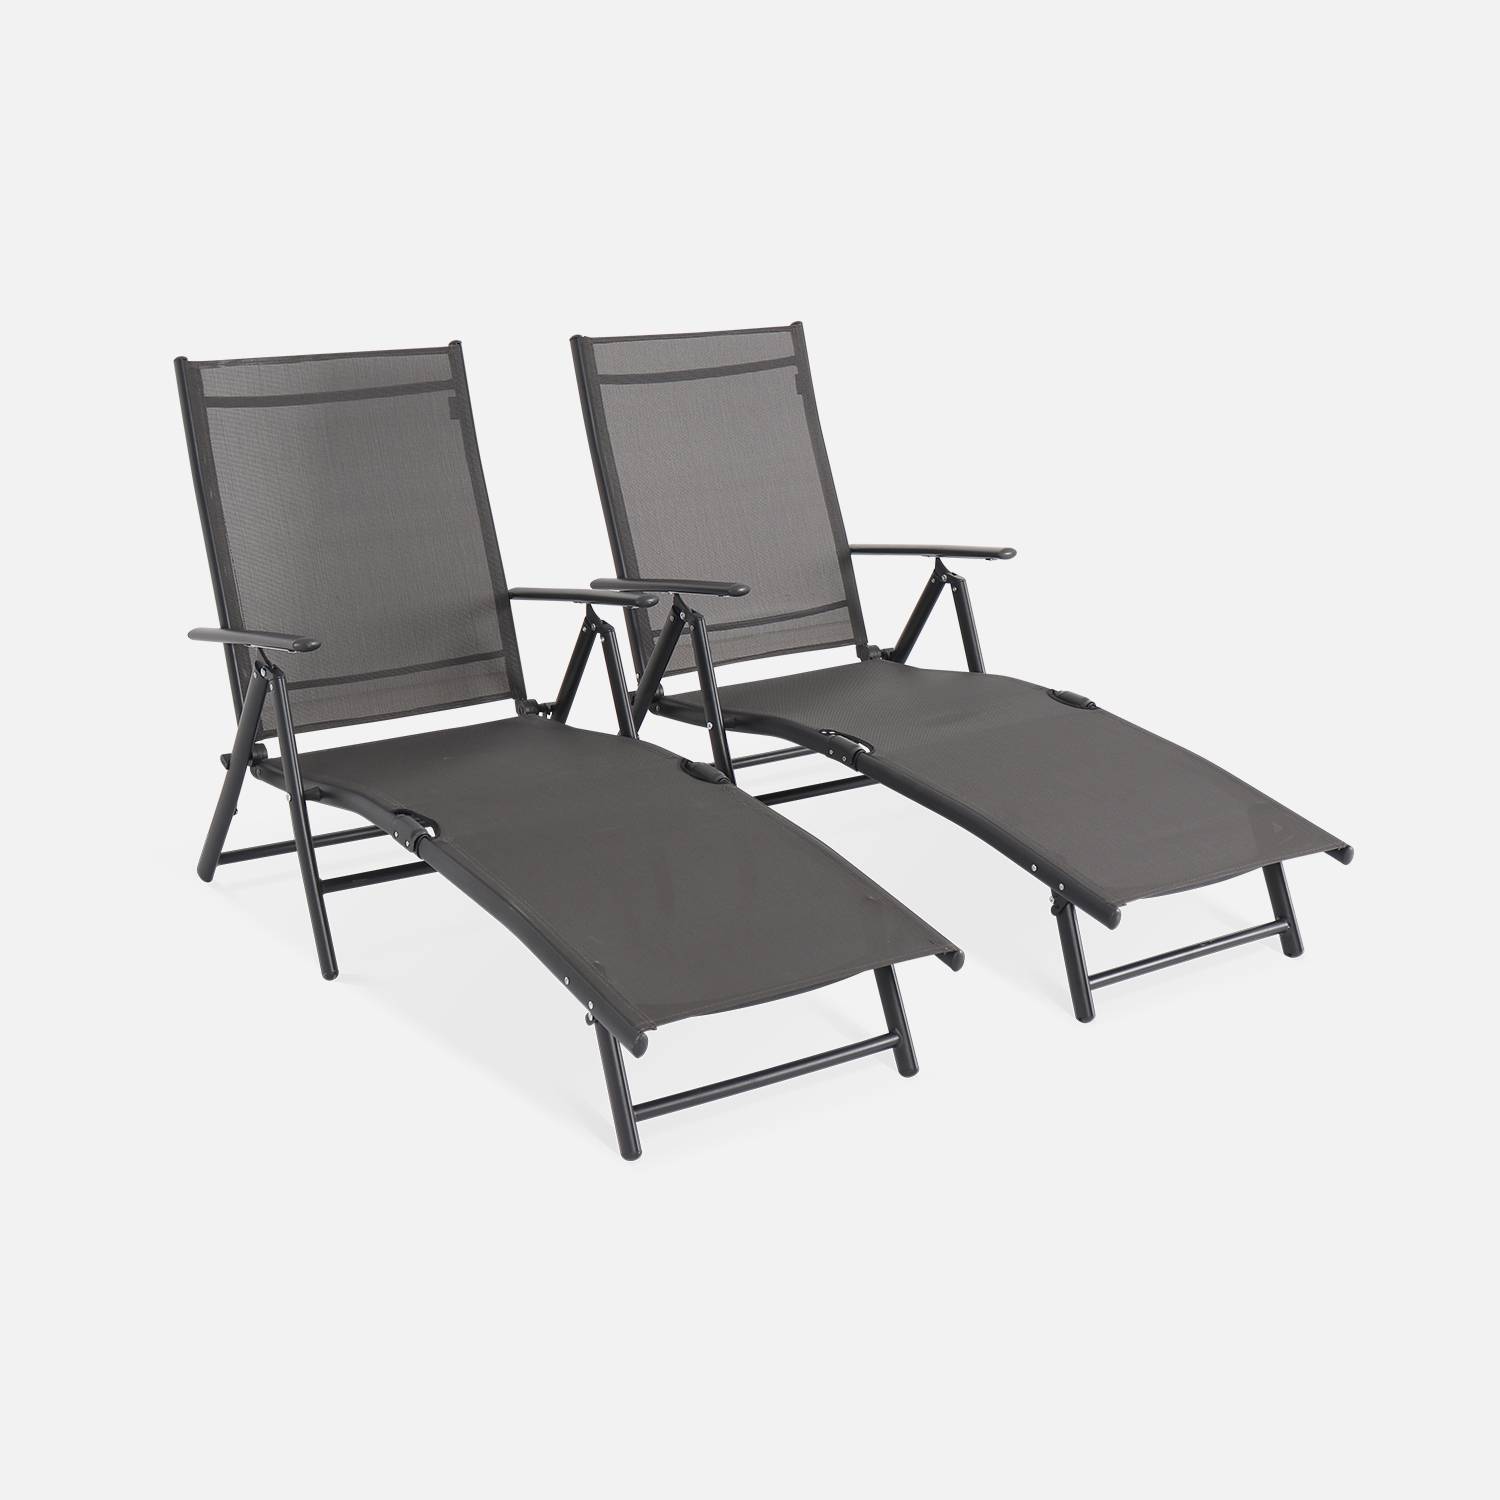 Set van 2 opvouwbare ligbedden - ligstoel - verstelbaar in 7 posities - antraciet Photo1